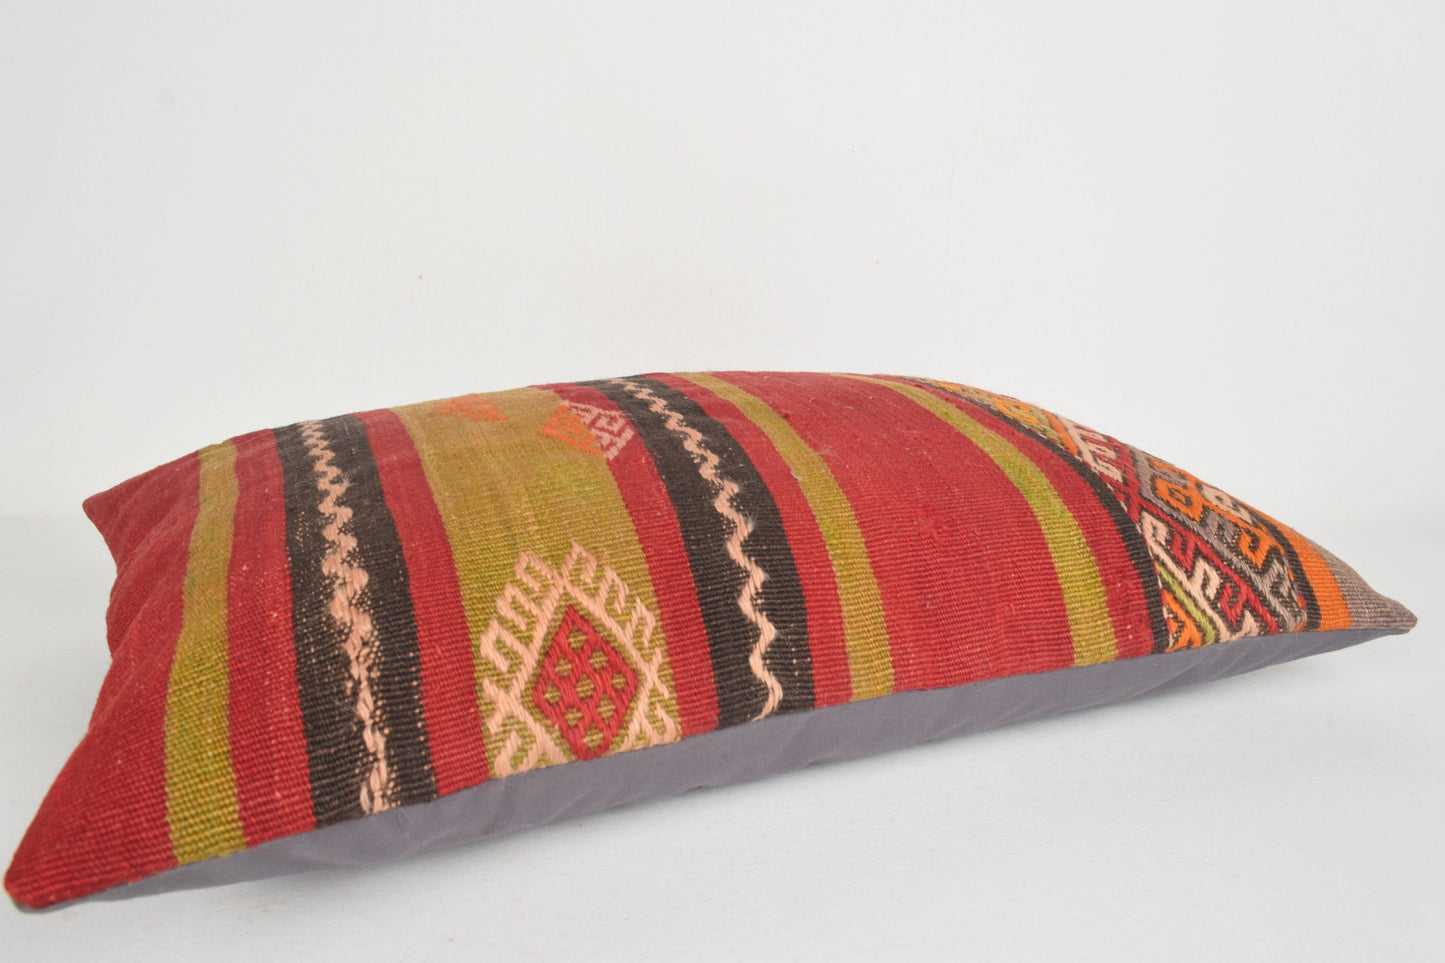 Kilim Body Pillow E00096 Lumbar Old Homemade Aztec